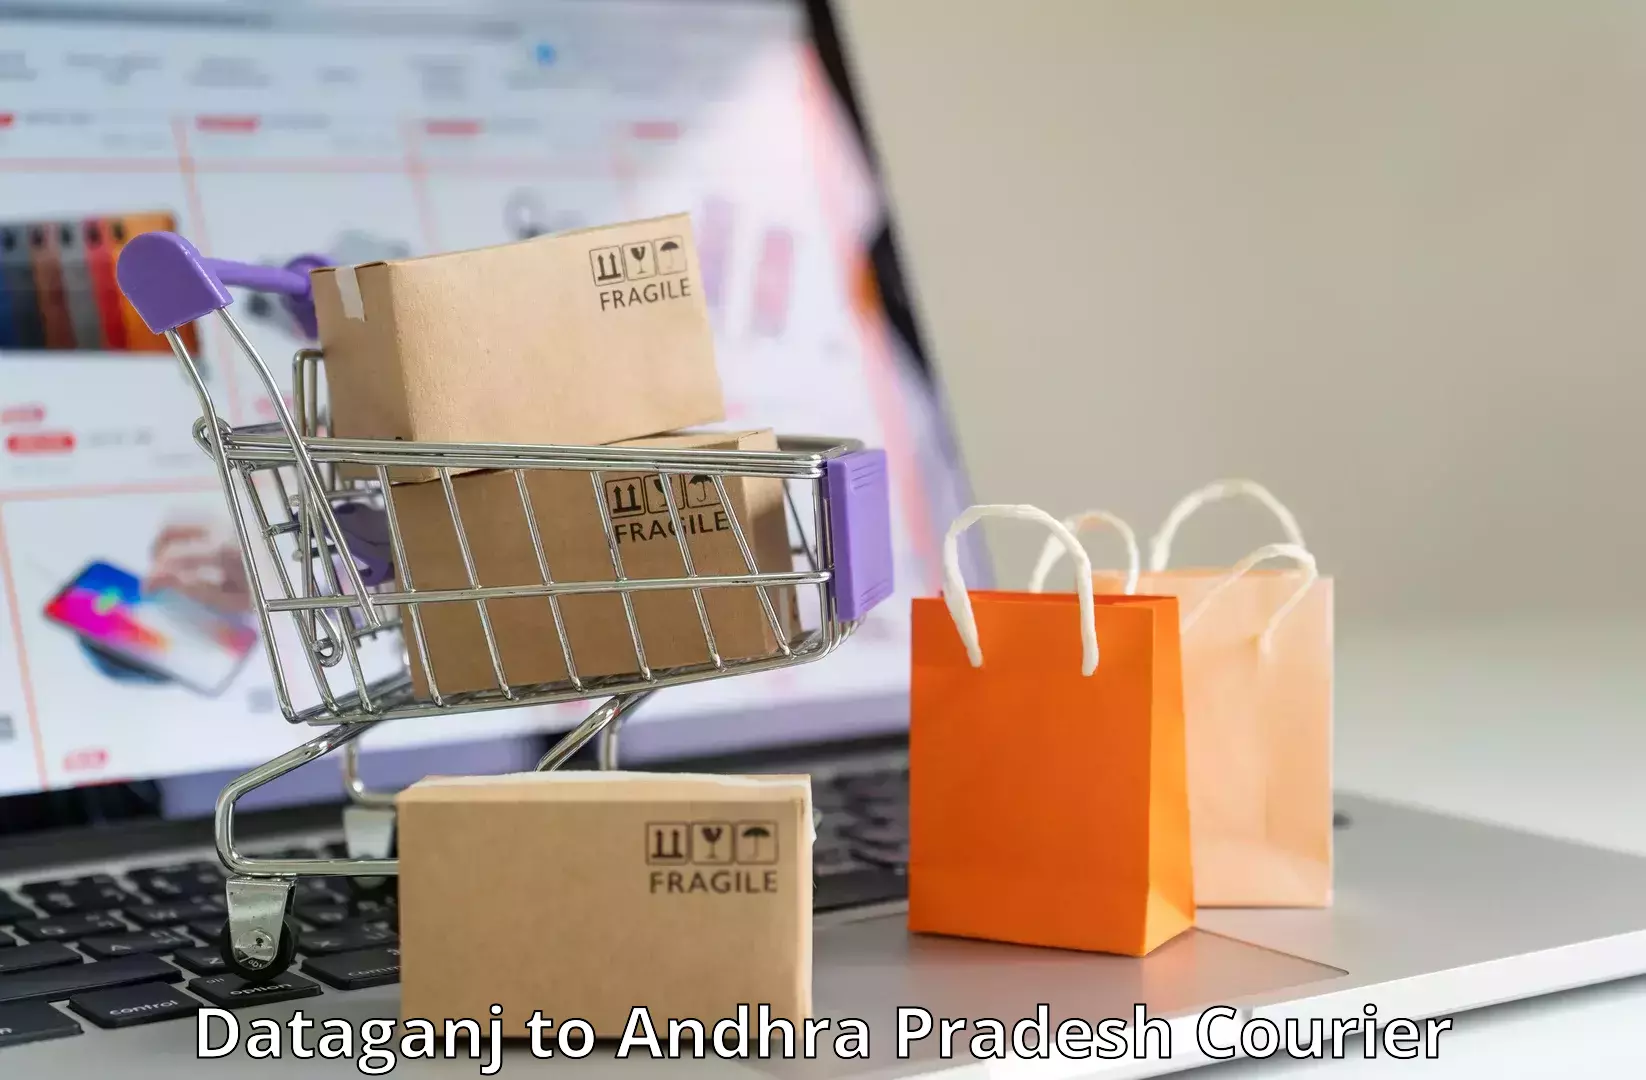 Lightweight courier Dataganj to Devarapalli